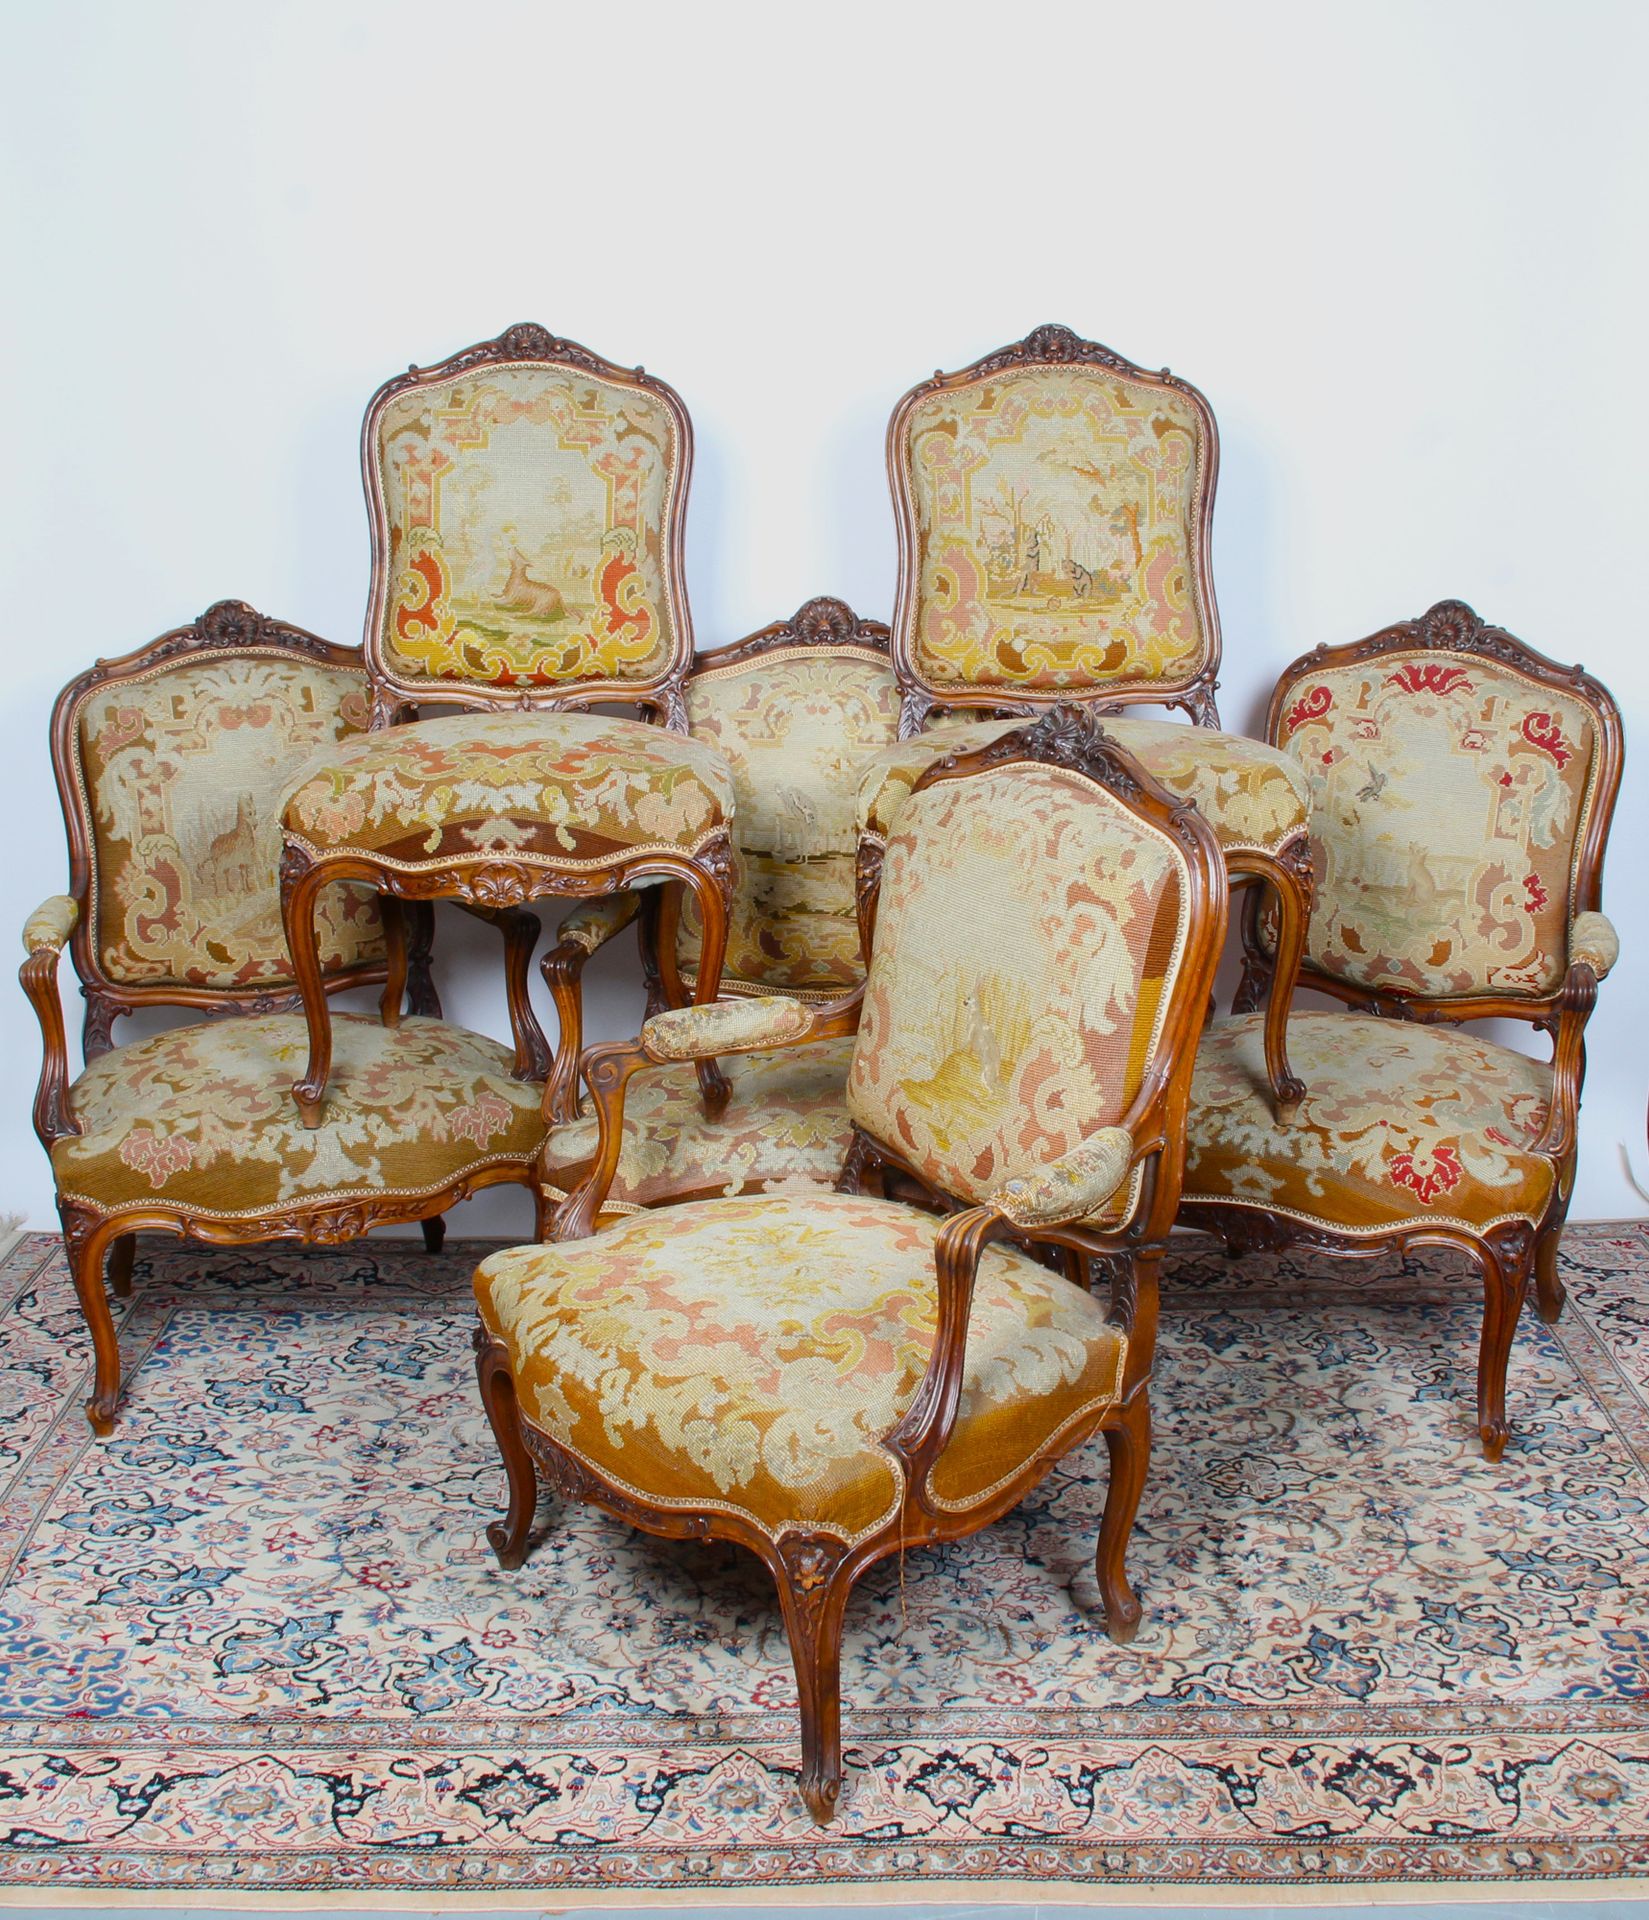 Null 路易十五风格的沙龙家具

包括四把扶手椅和两把平背椅，天然木质，模制雕刻有贝壳、叶子、刺桐叶和卷轴。椅腿呈弧形，末端饰有卷轴。挂毯上有拉封丹的寓言故事&hellip;